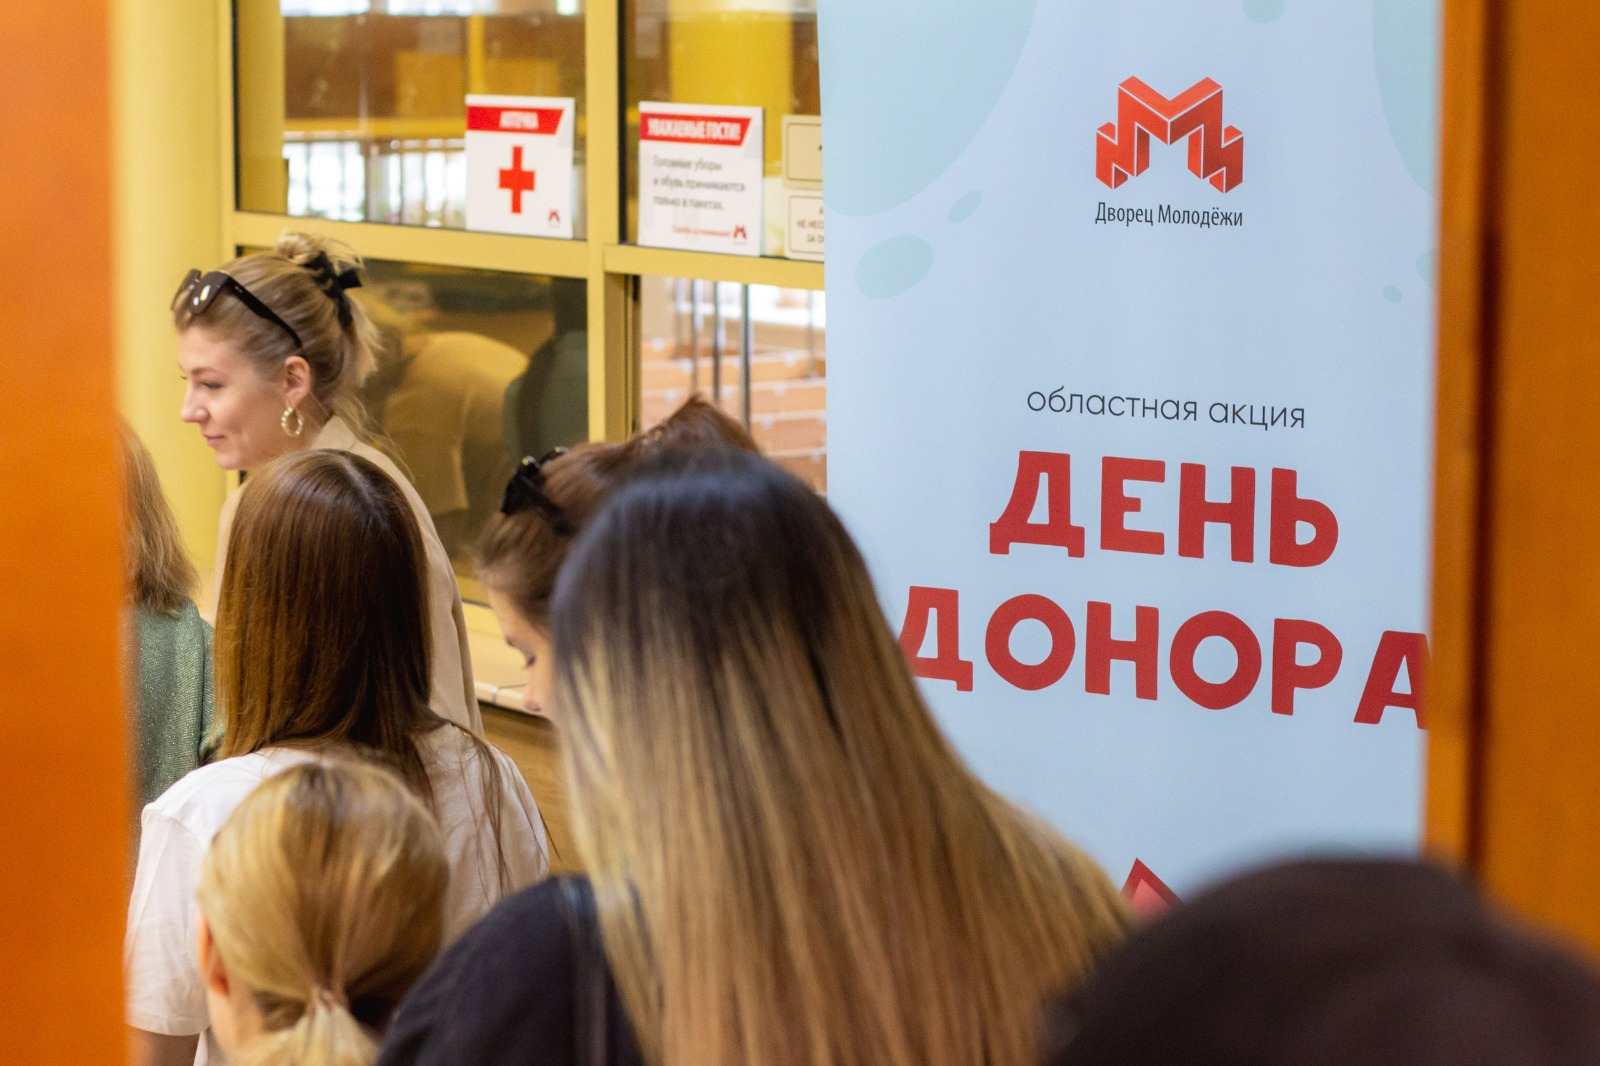 Ярославская молодежь примет участие в акции «День донора»